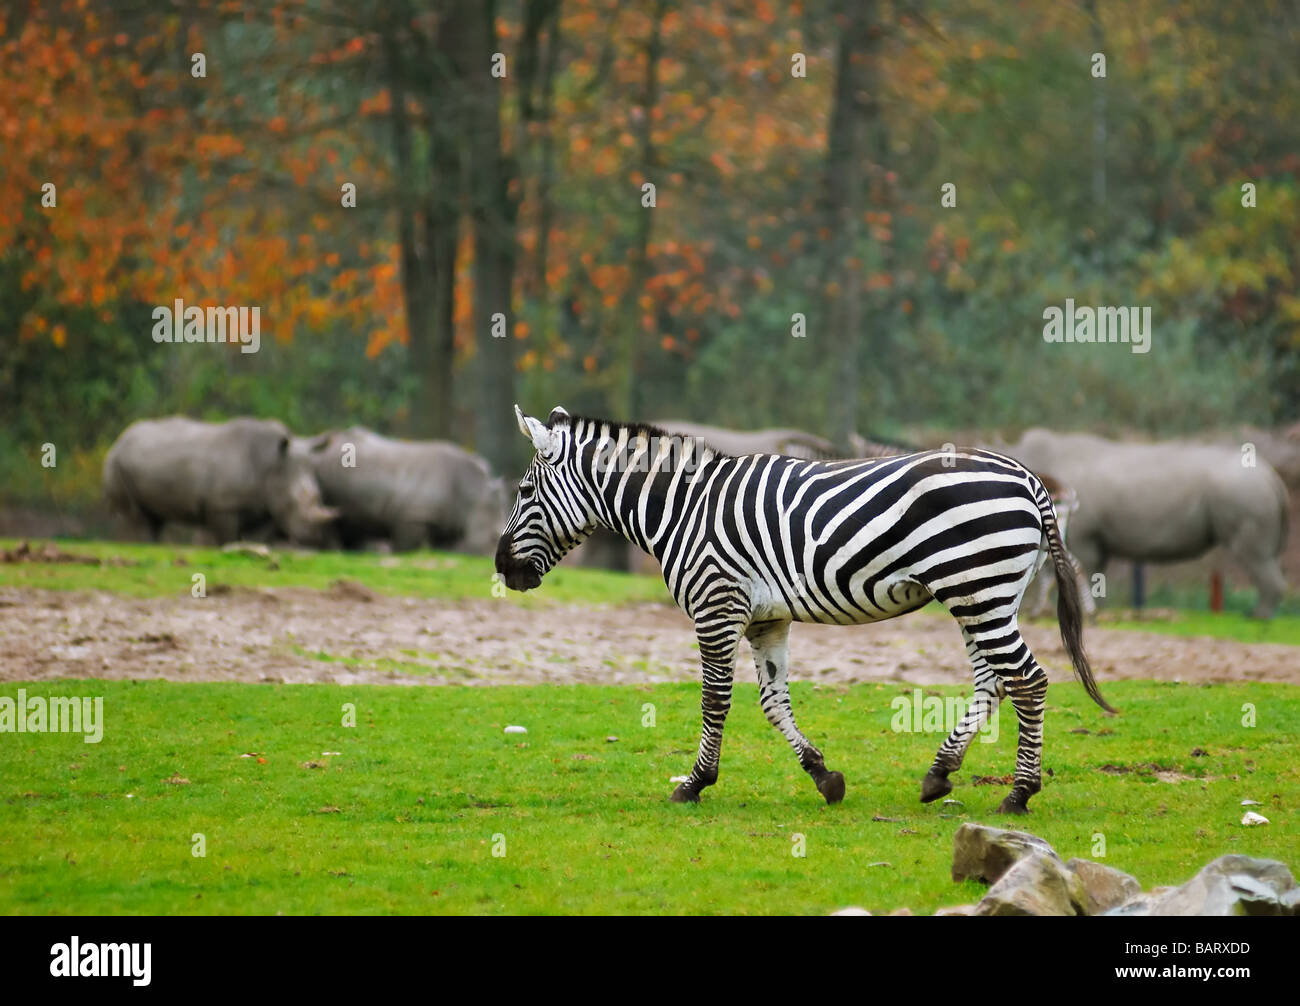 A zebra in safari park Stock Photo